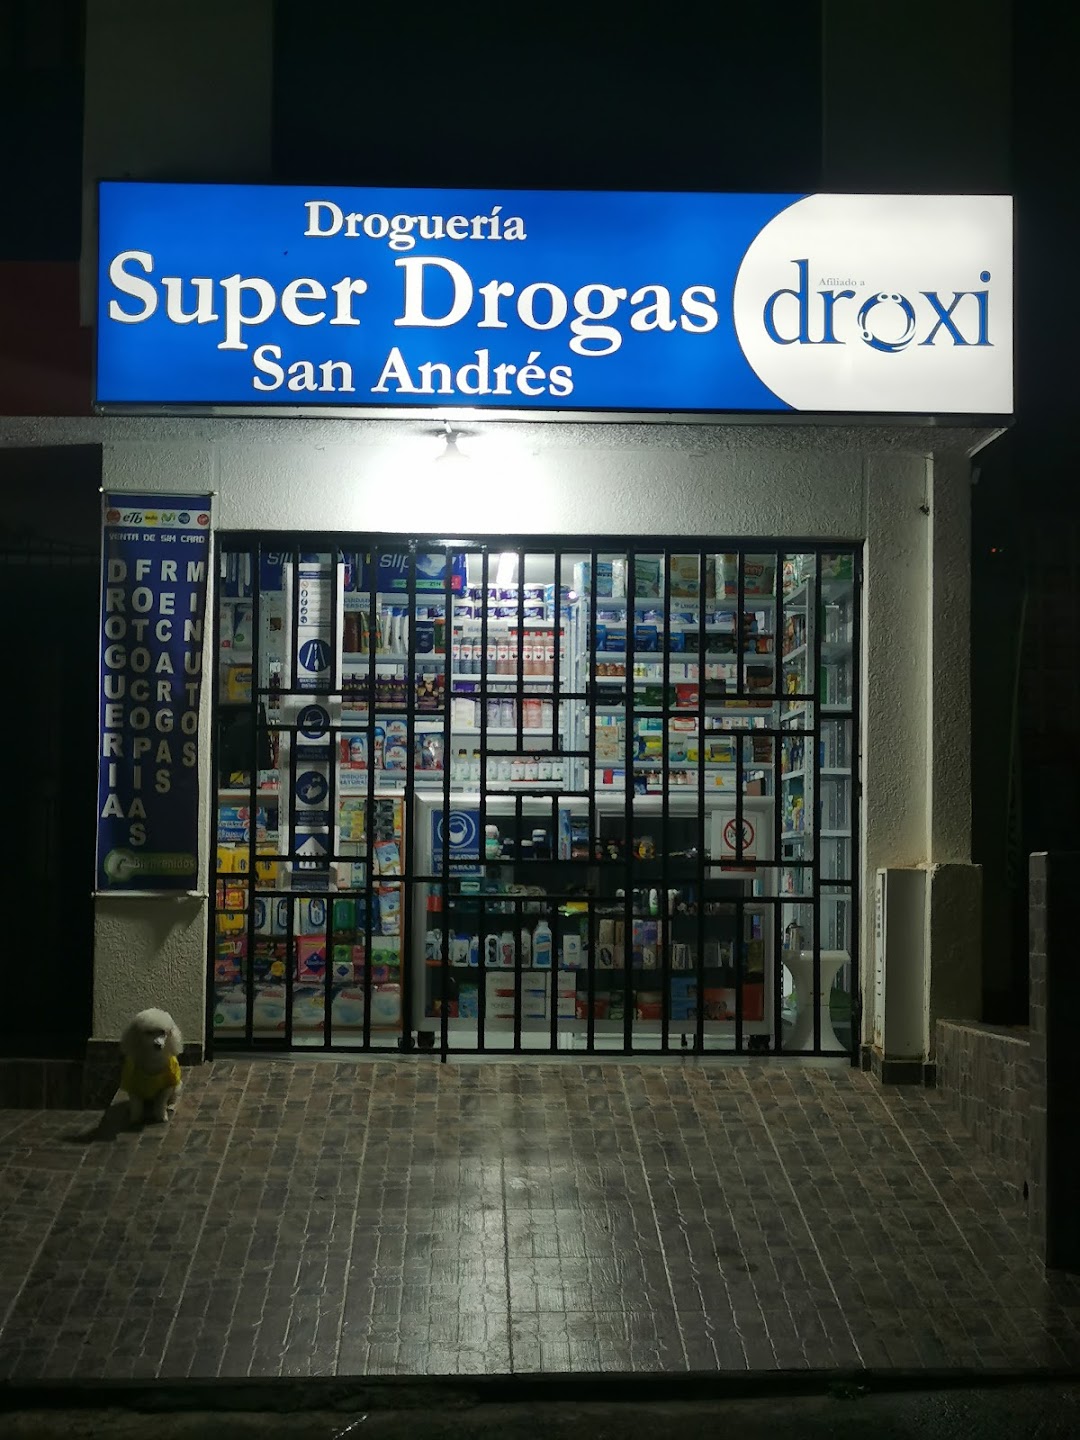 Drogueria San Andres Droxi.